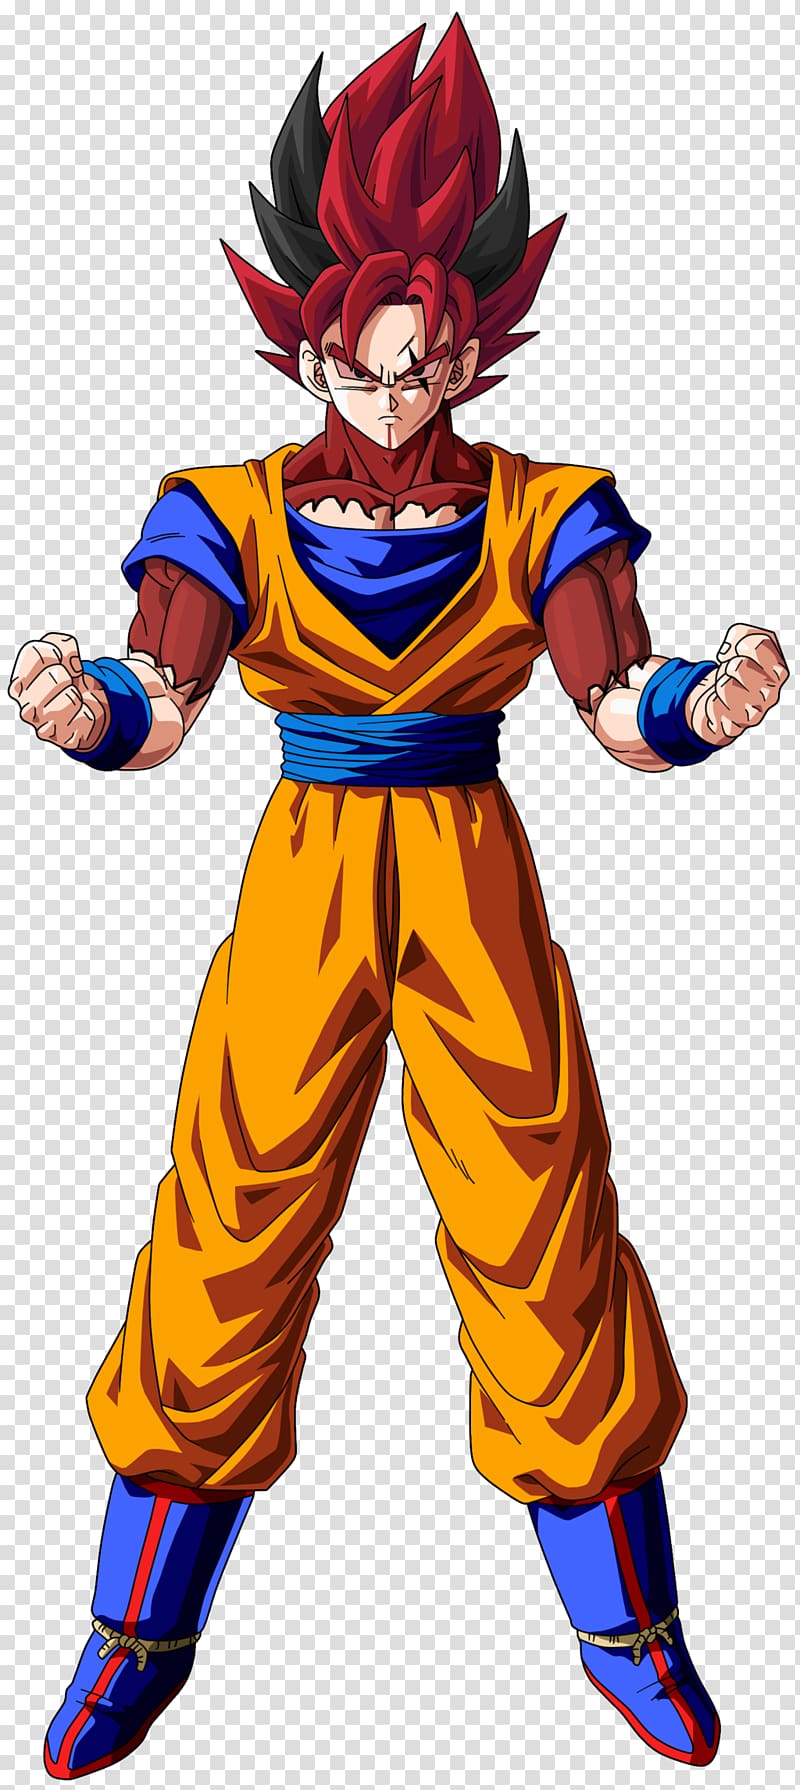 Goku Vegeta Gohan Trunks Frieza, goku transparent background PNG clipart